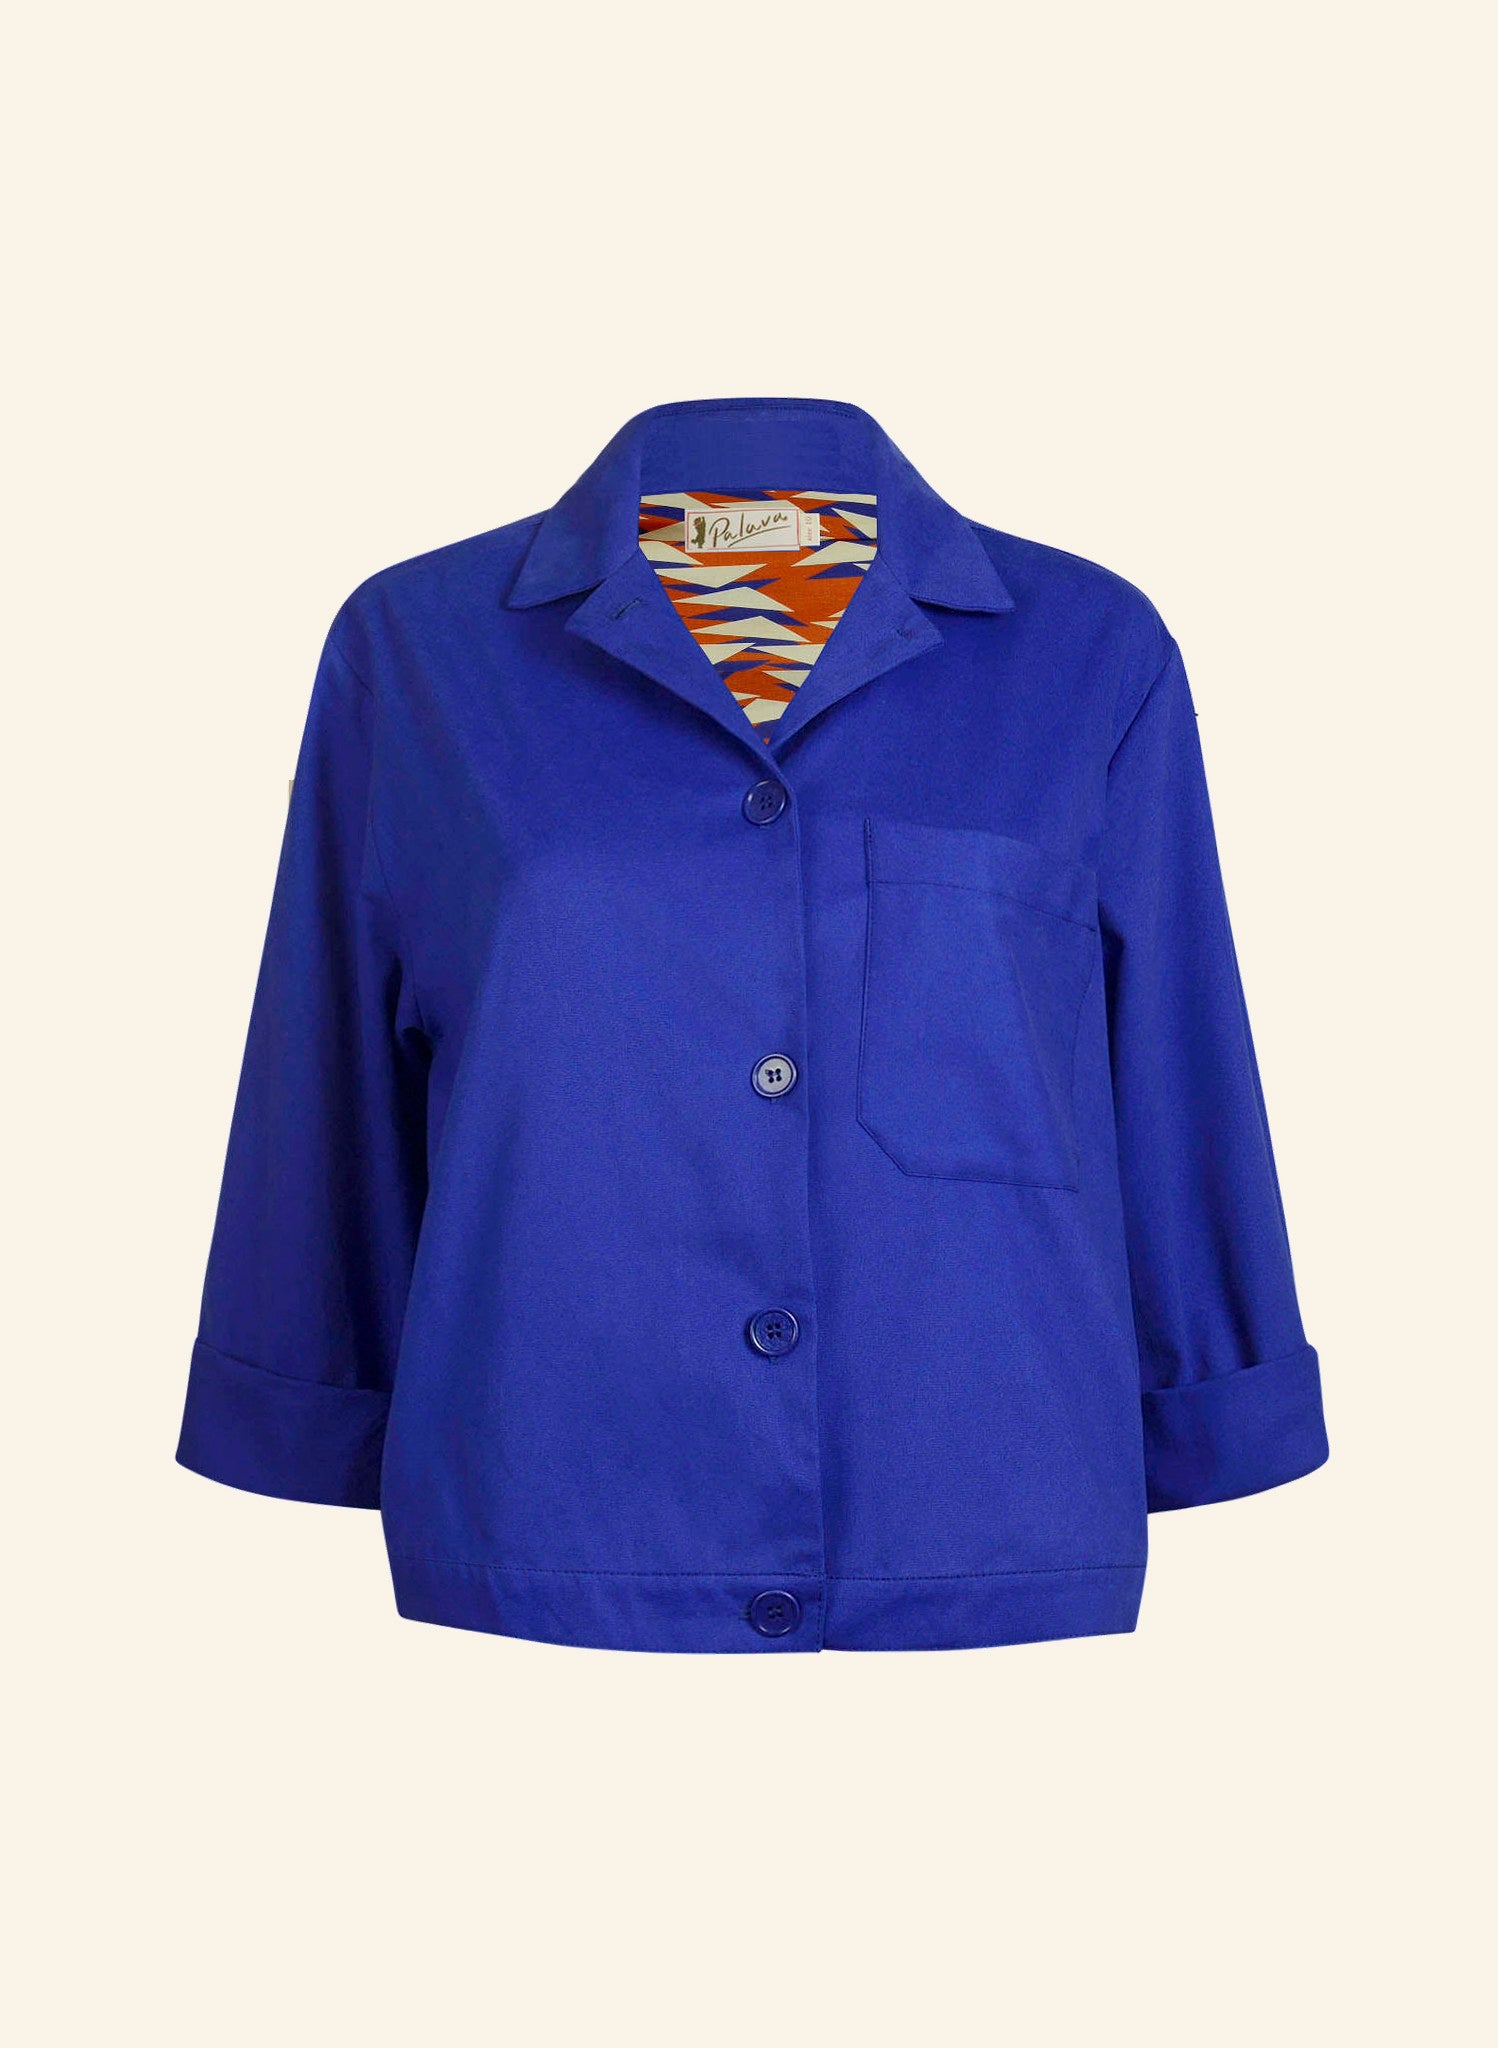 Walter Workwear Jacket - Cobalt Blue Cotton